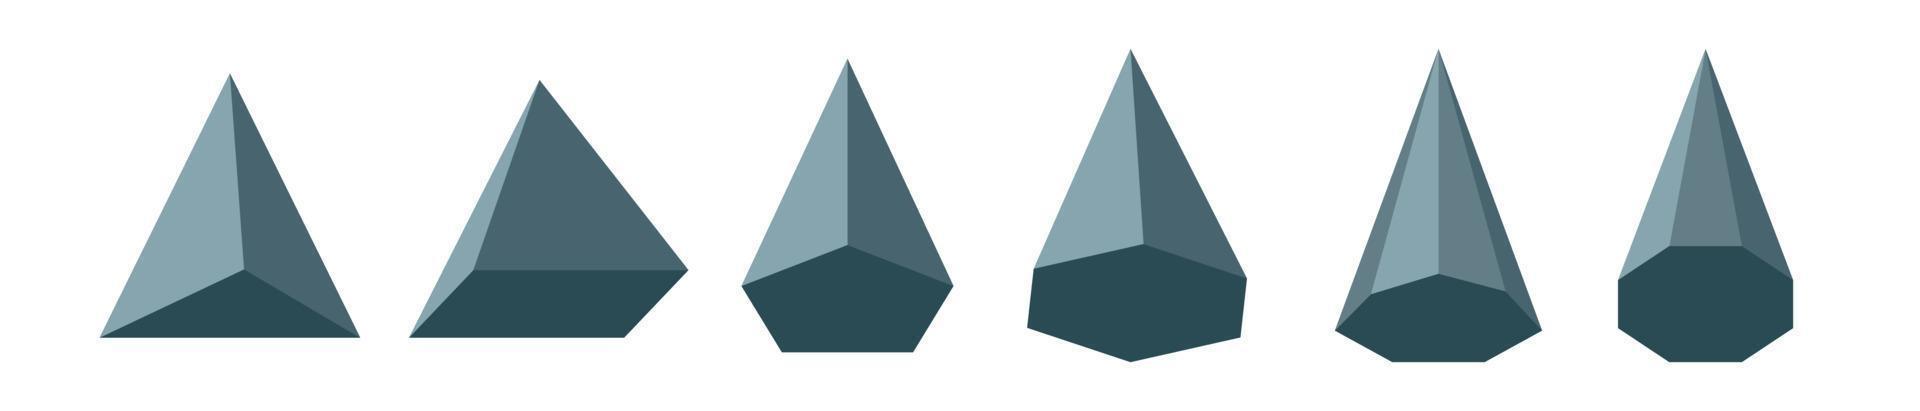 ensemble de types de pyramide. figures géométriques mathématiques. polyèdre. pyramide polygonale octogonale octogonale hexagonale rectangulaire pentagonale triangulaire. illustration vectorielle vecteur